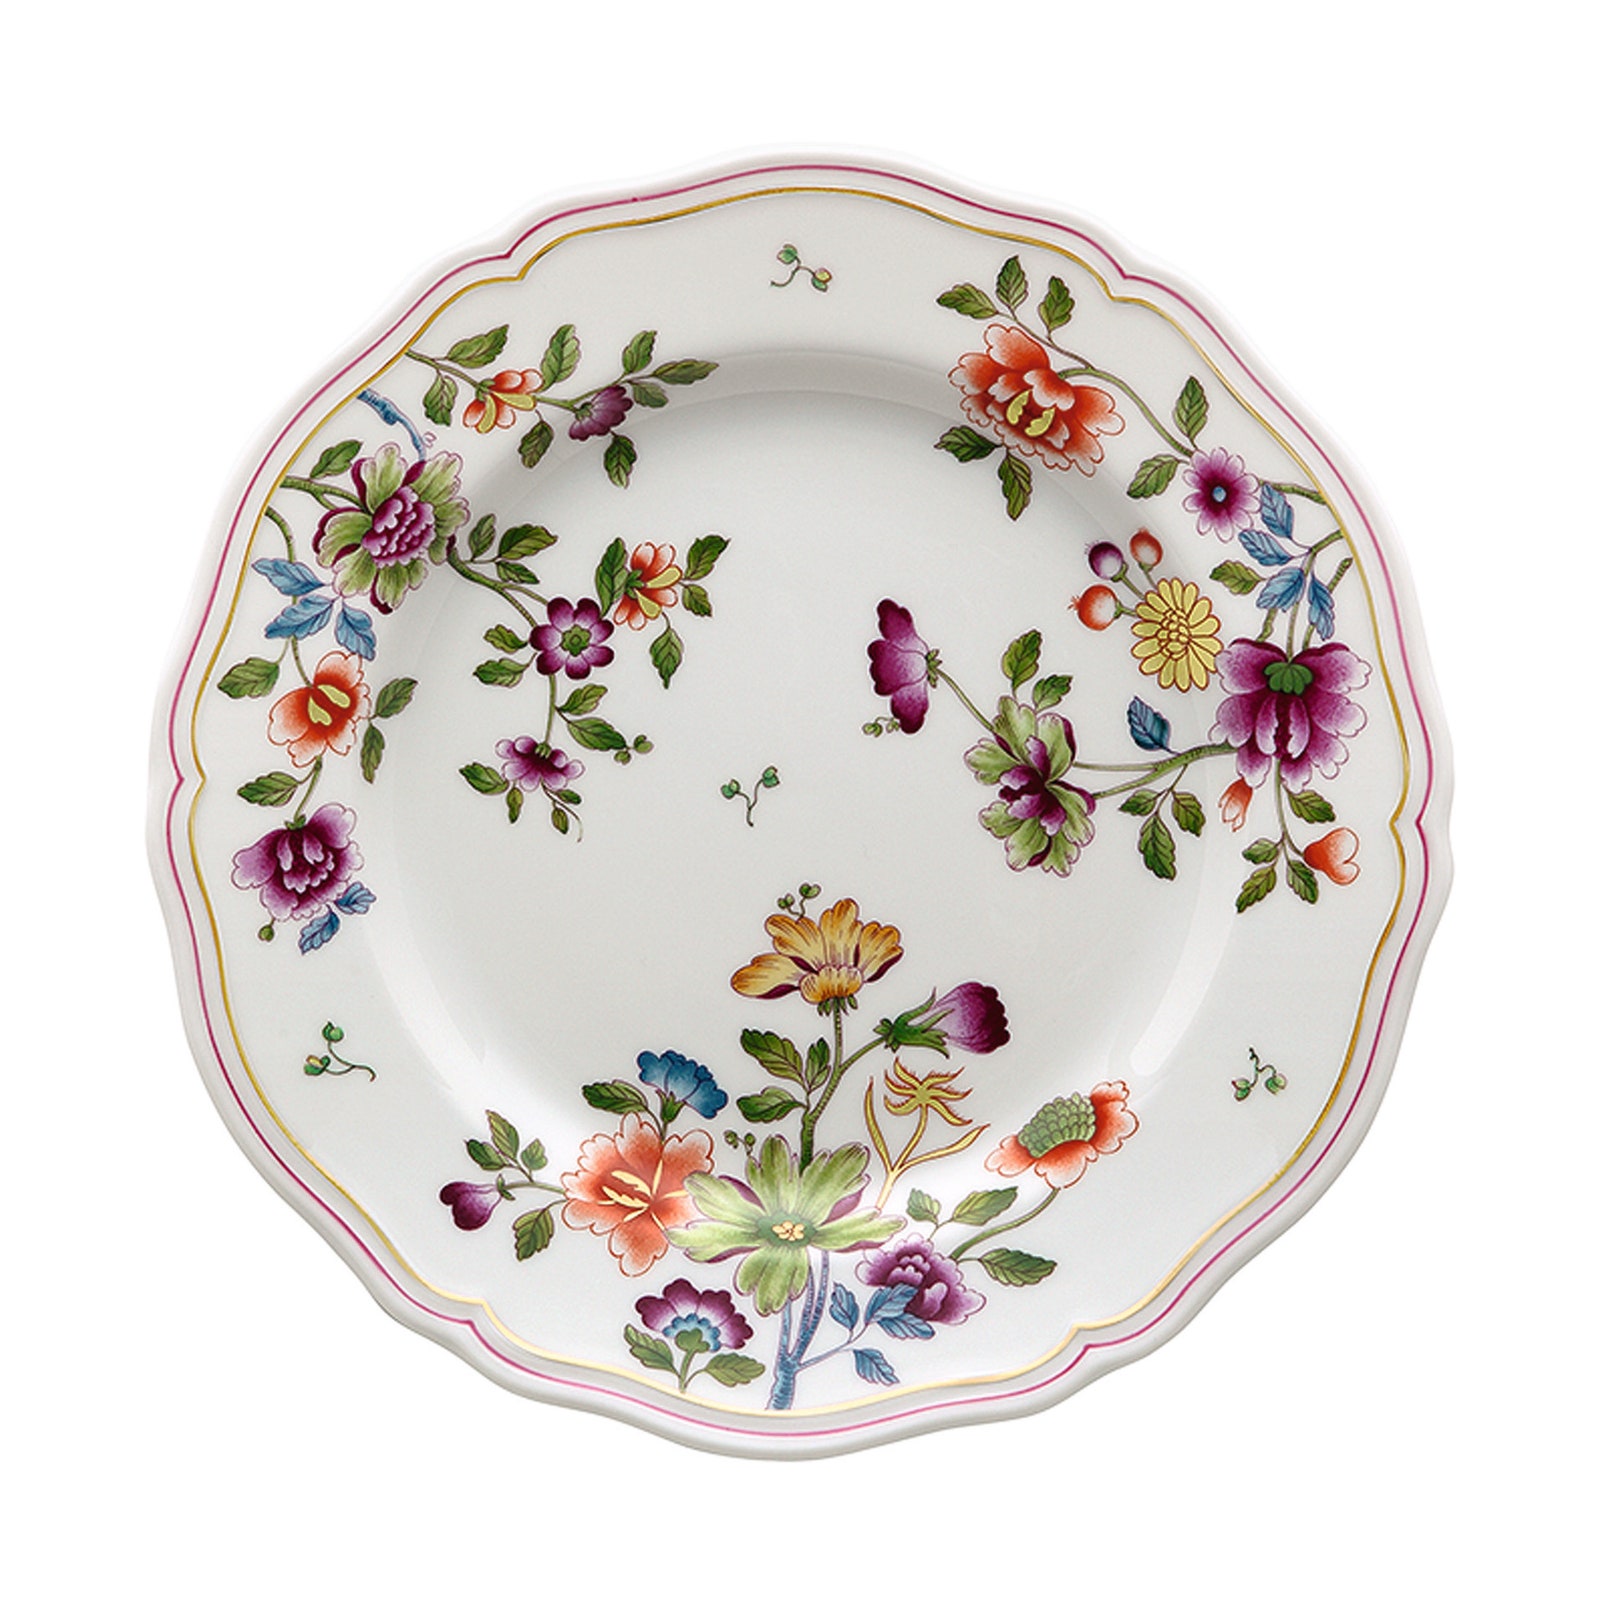 Фарфоровая тарелка из коллекции Granduca Coreana Richard Ginori.